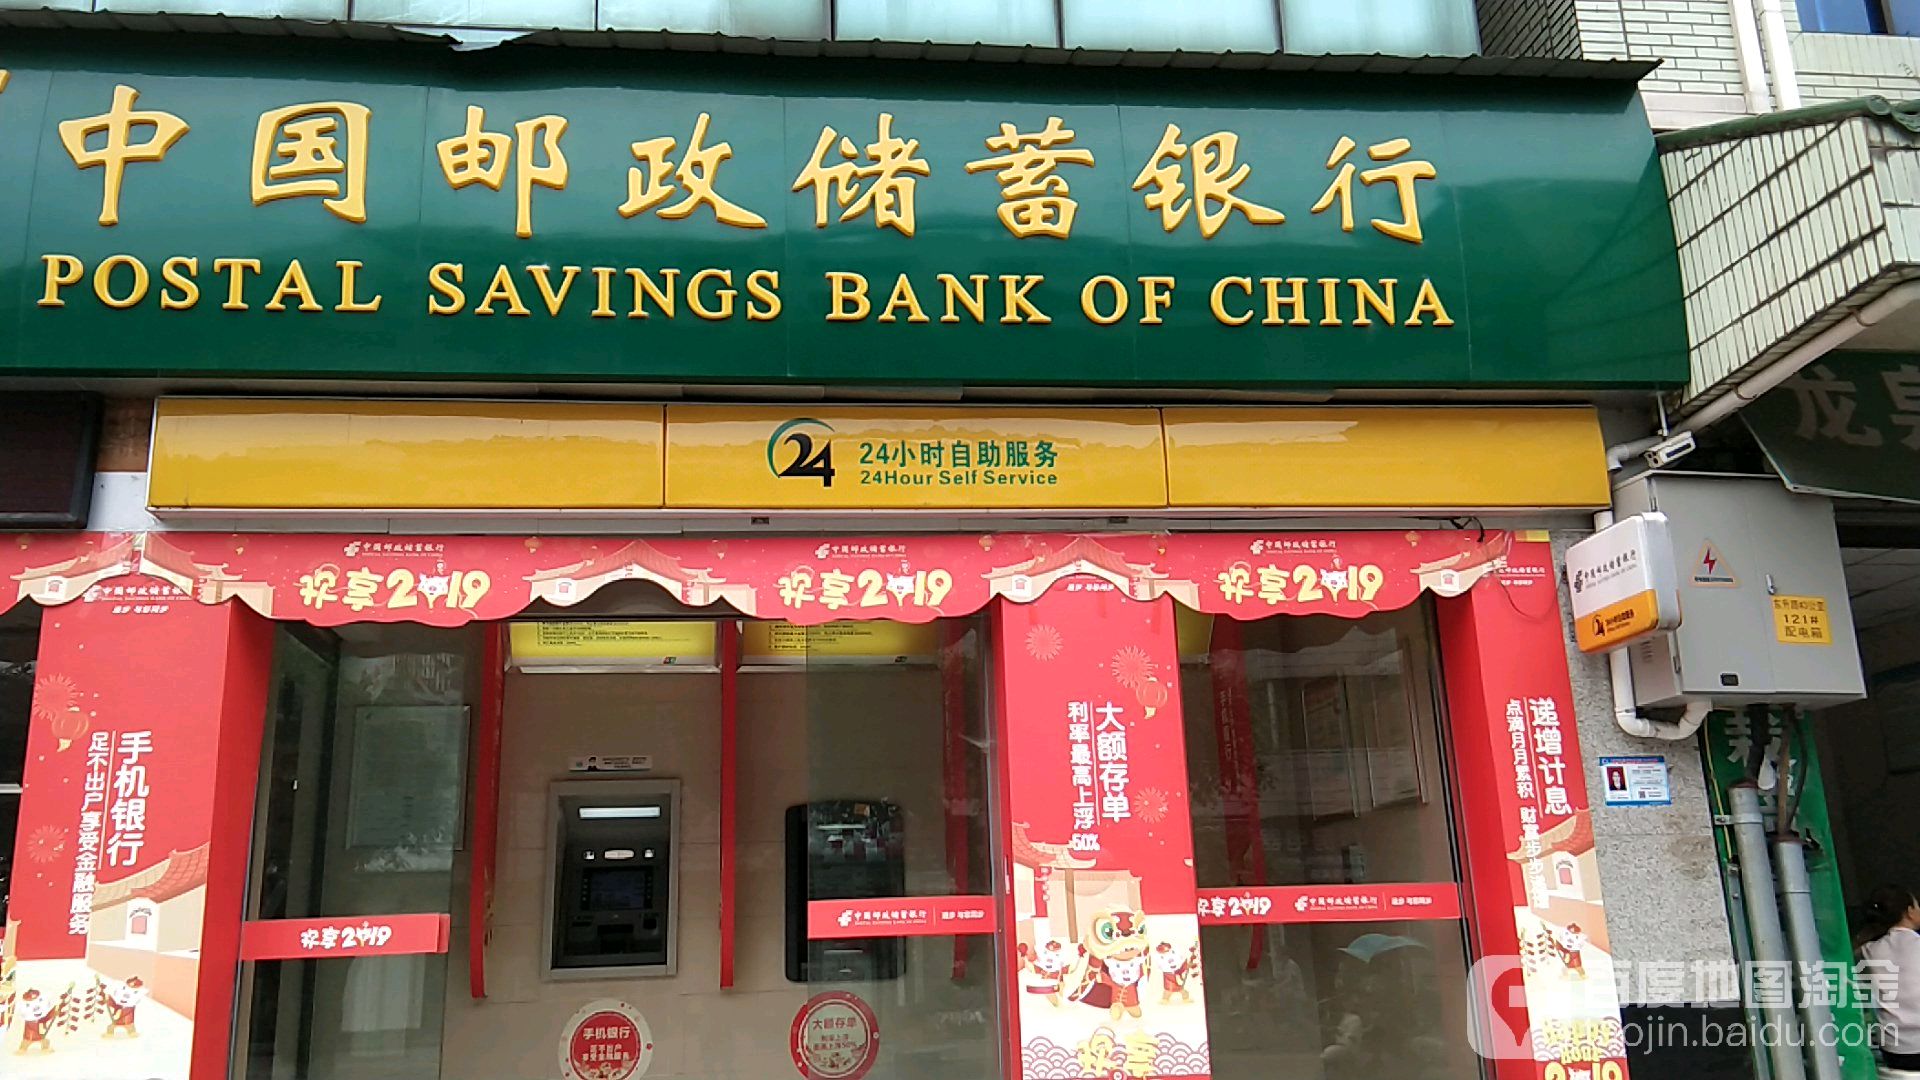 中國郵政儲蓄銀行24小時自助銀行服務(人民路)